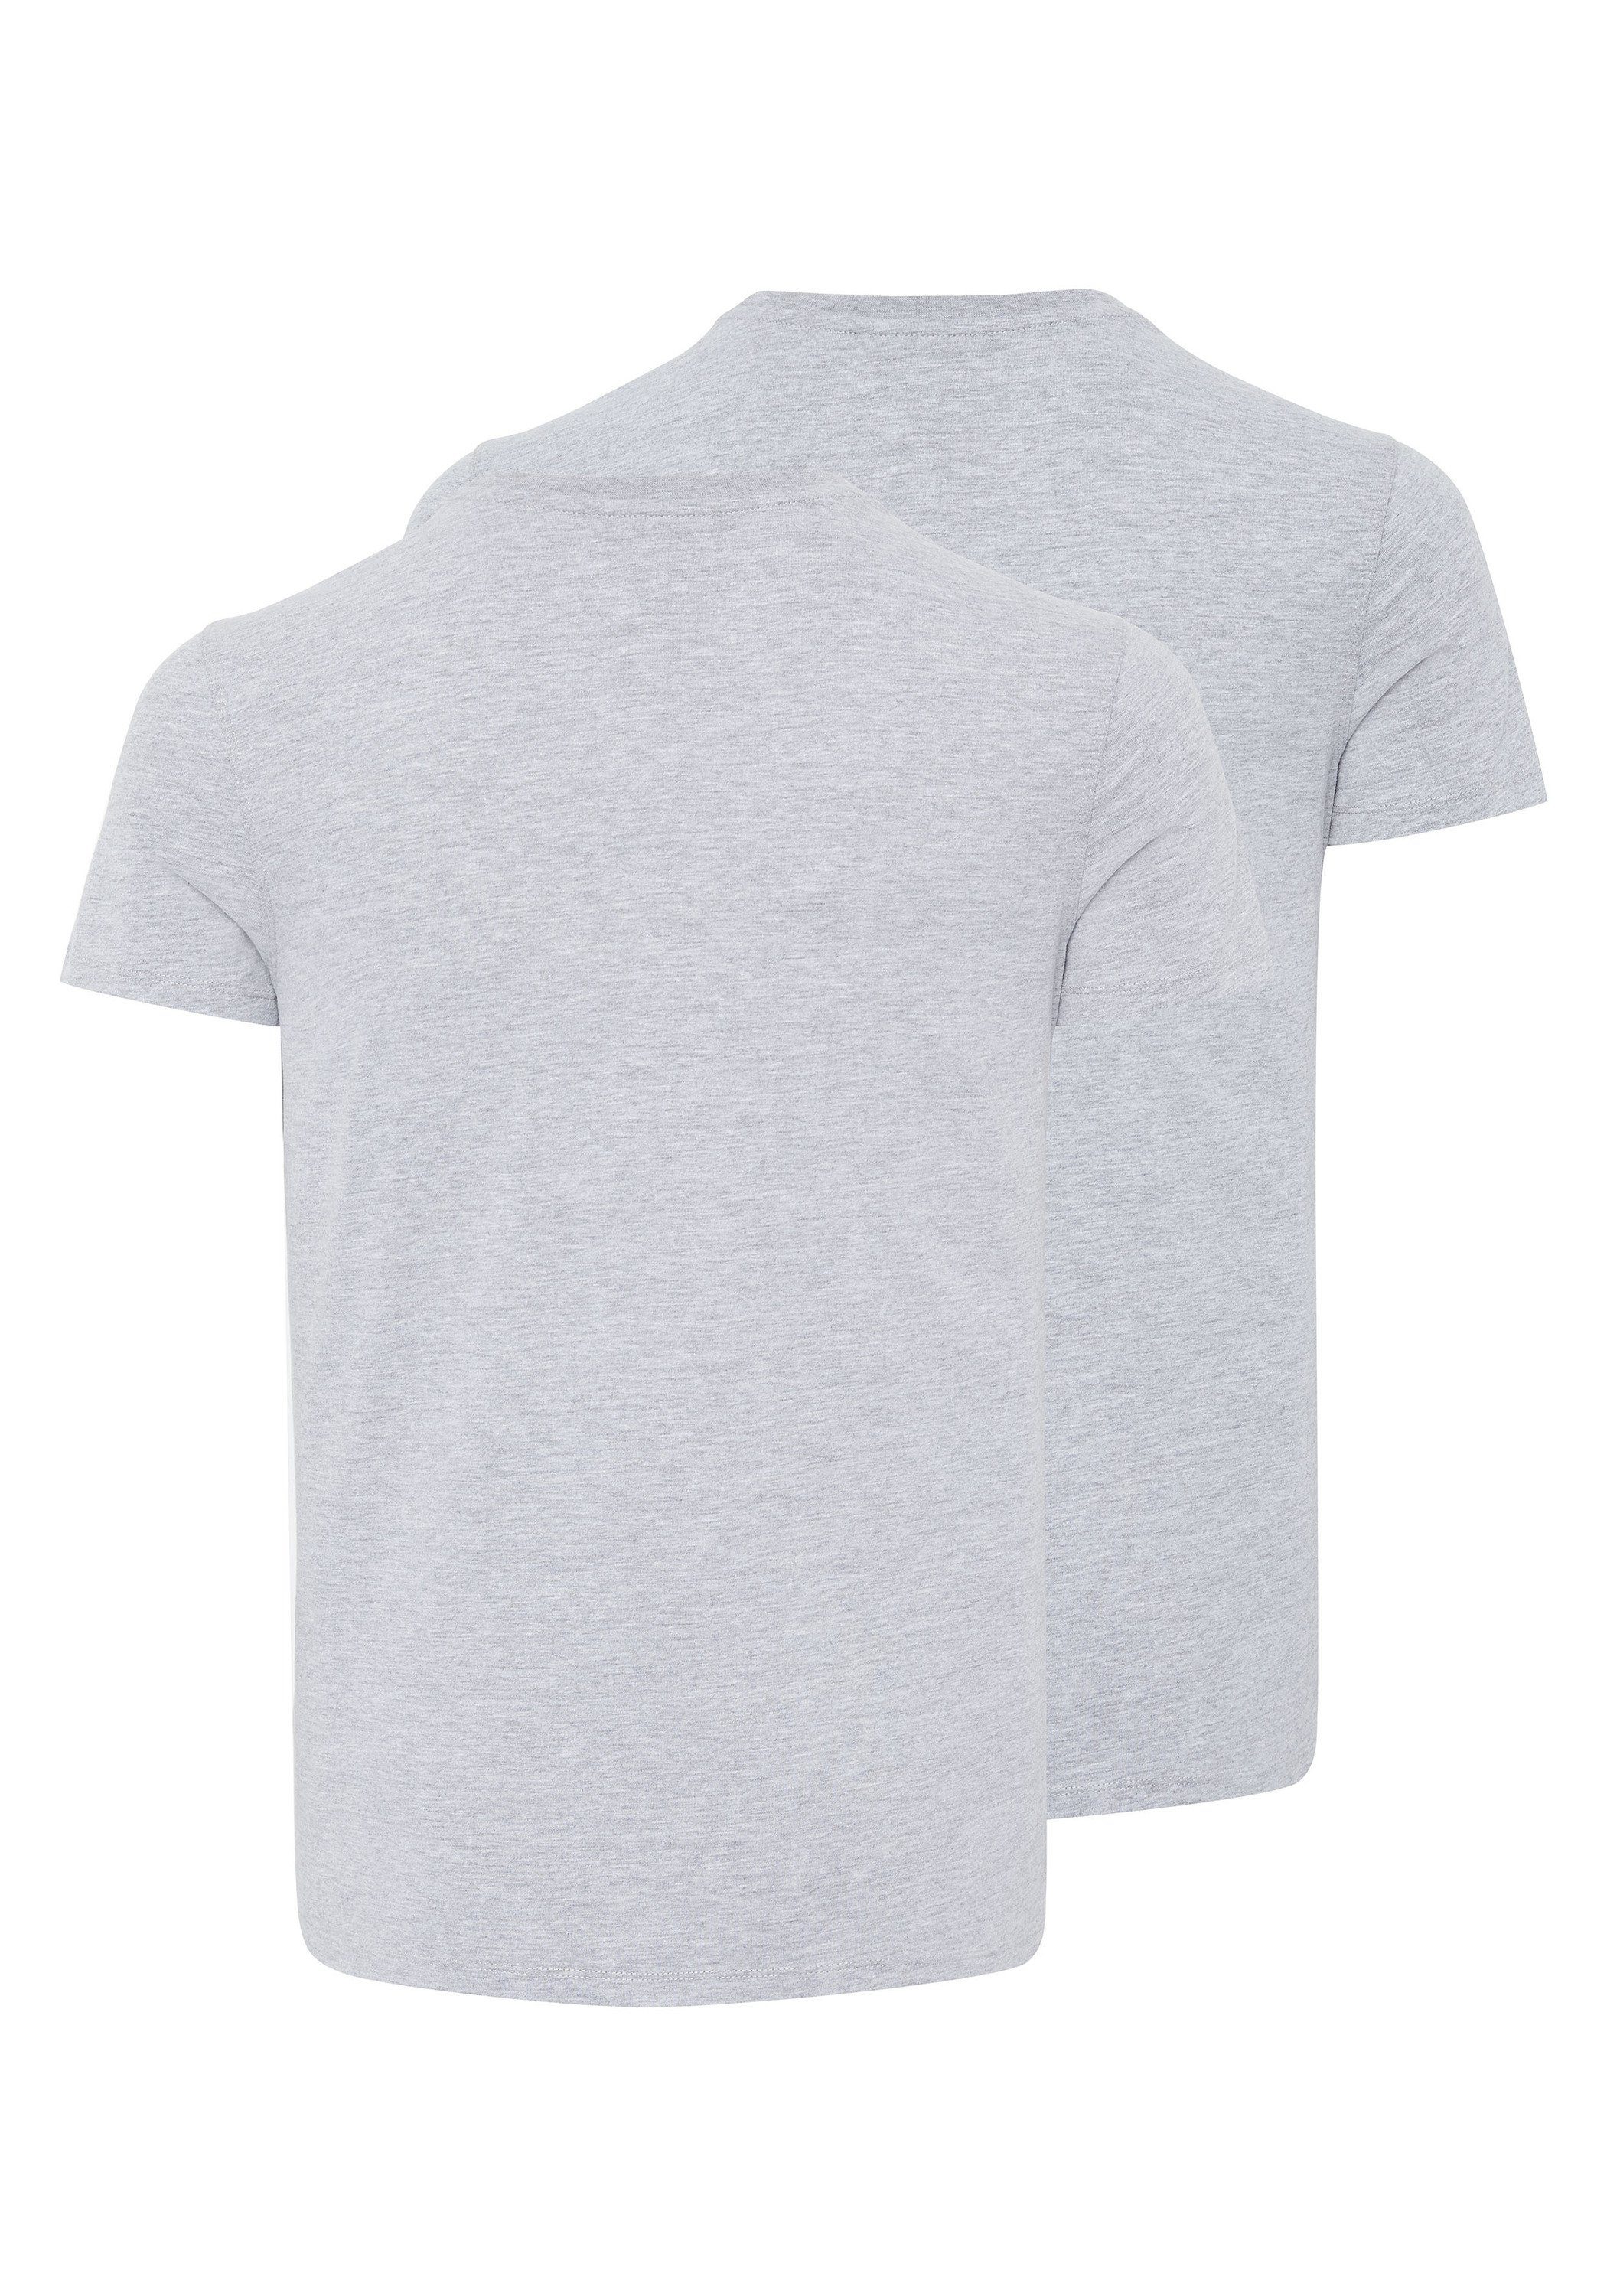 Mel, im Grey T-Shirts mit Neutr, 2 Basic-Stil Logo Print-Shirt Chiemsee